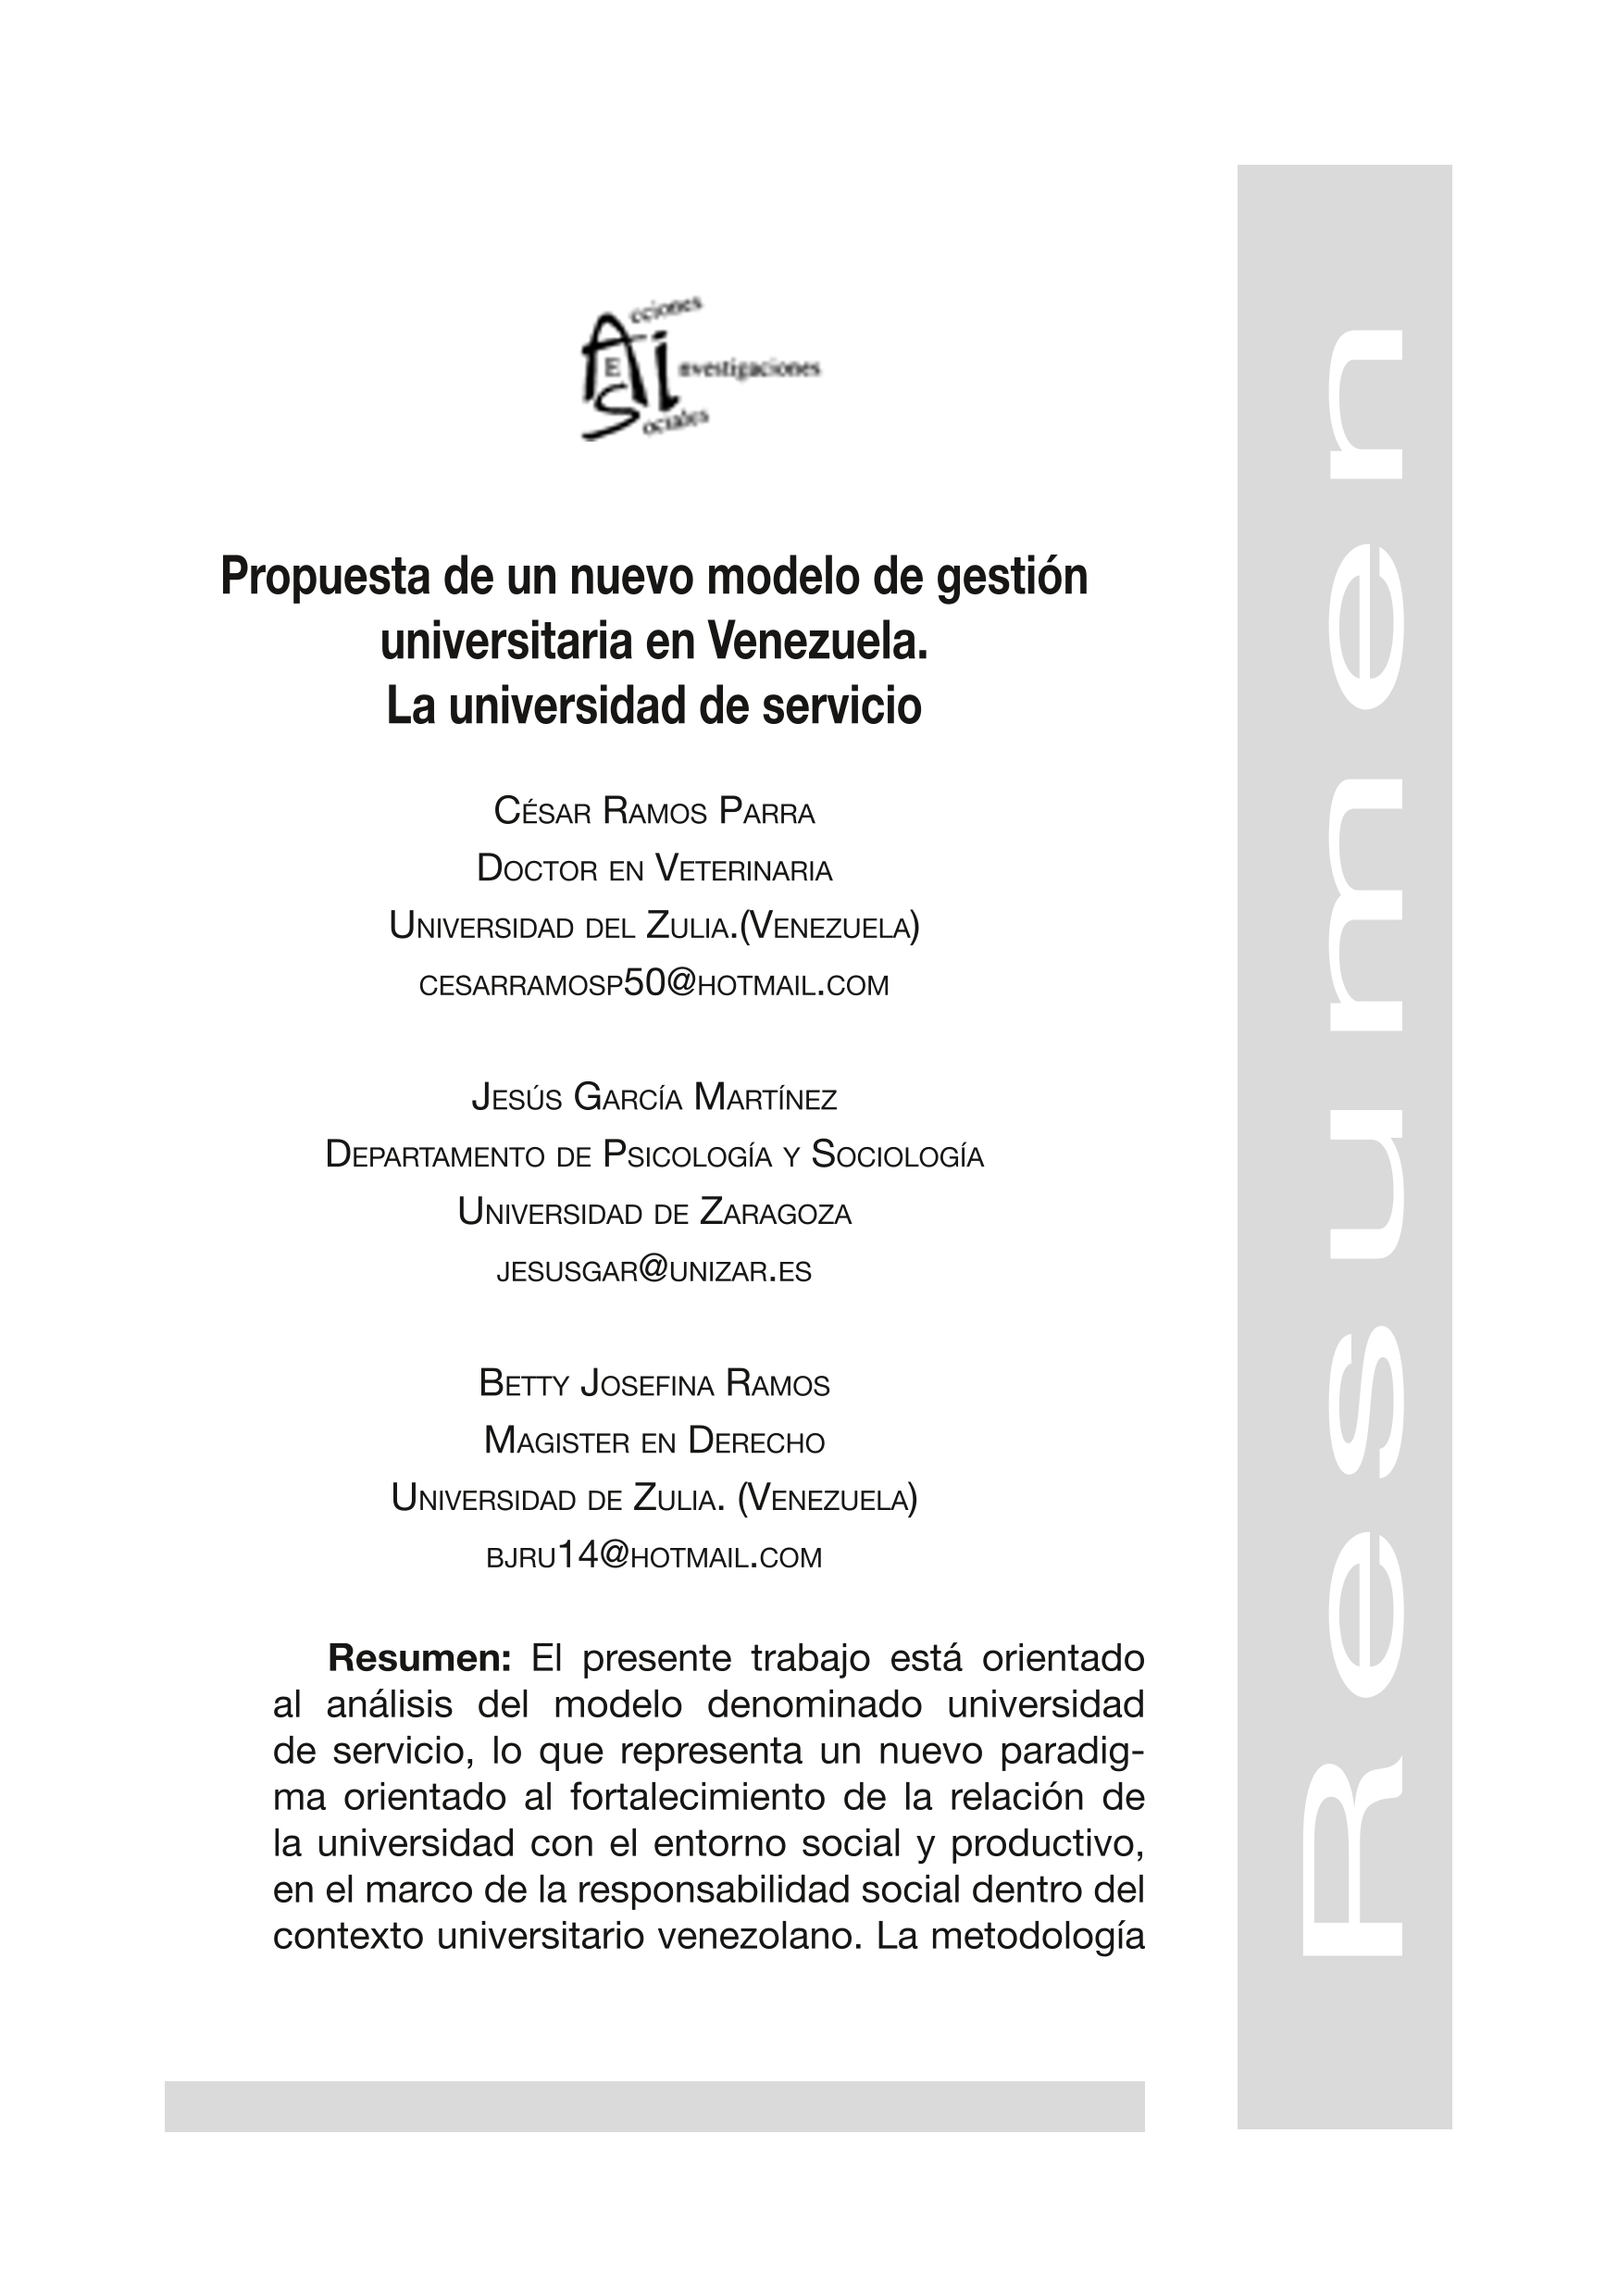 Propuesta de un nuevo modelo de gestión universitaria en Venezuela. la Universidad de servicio